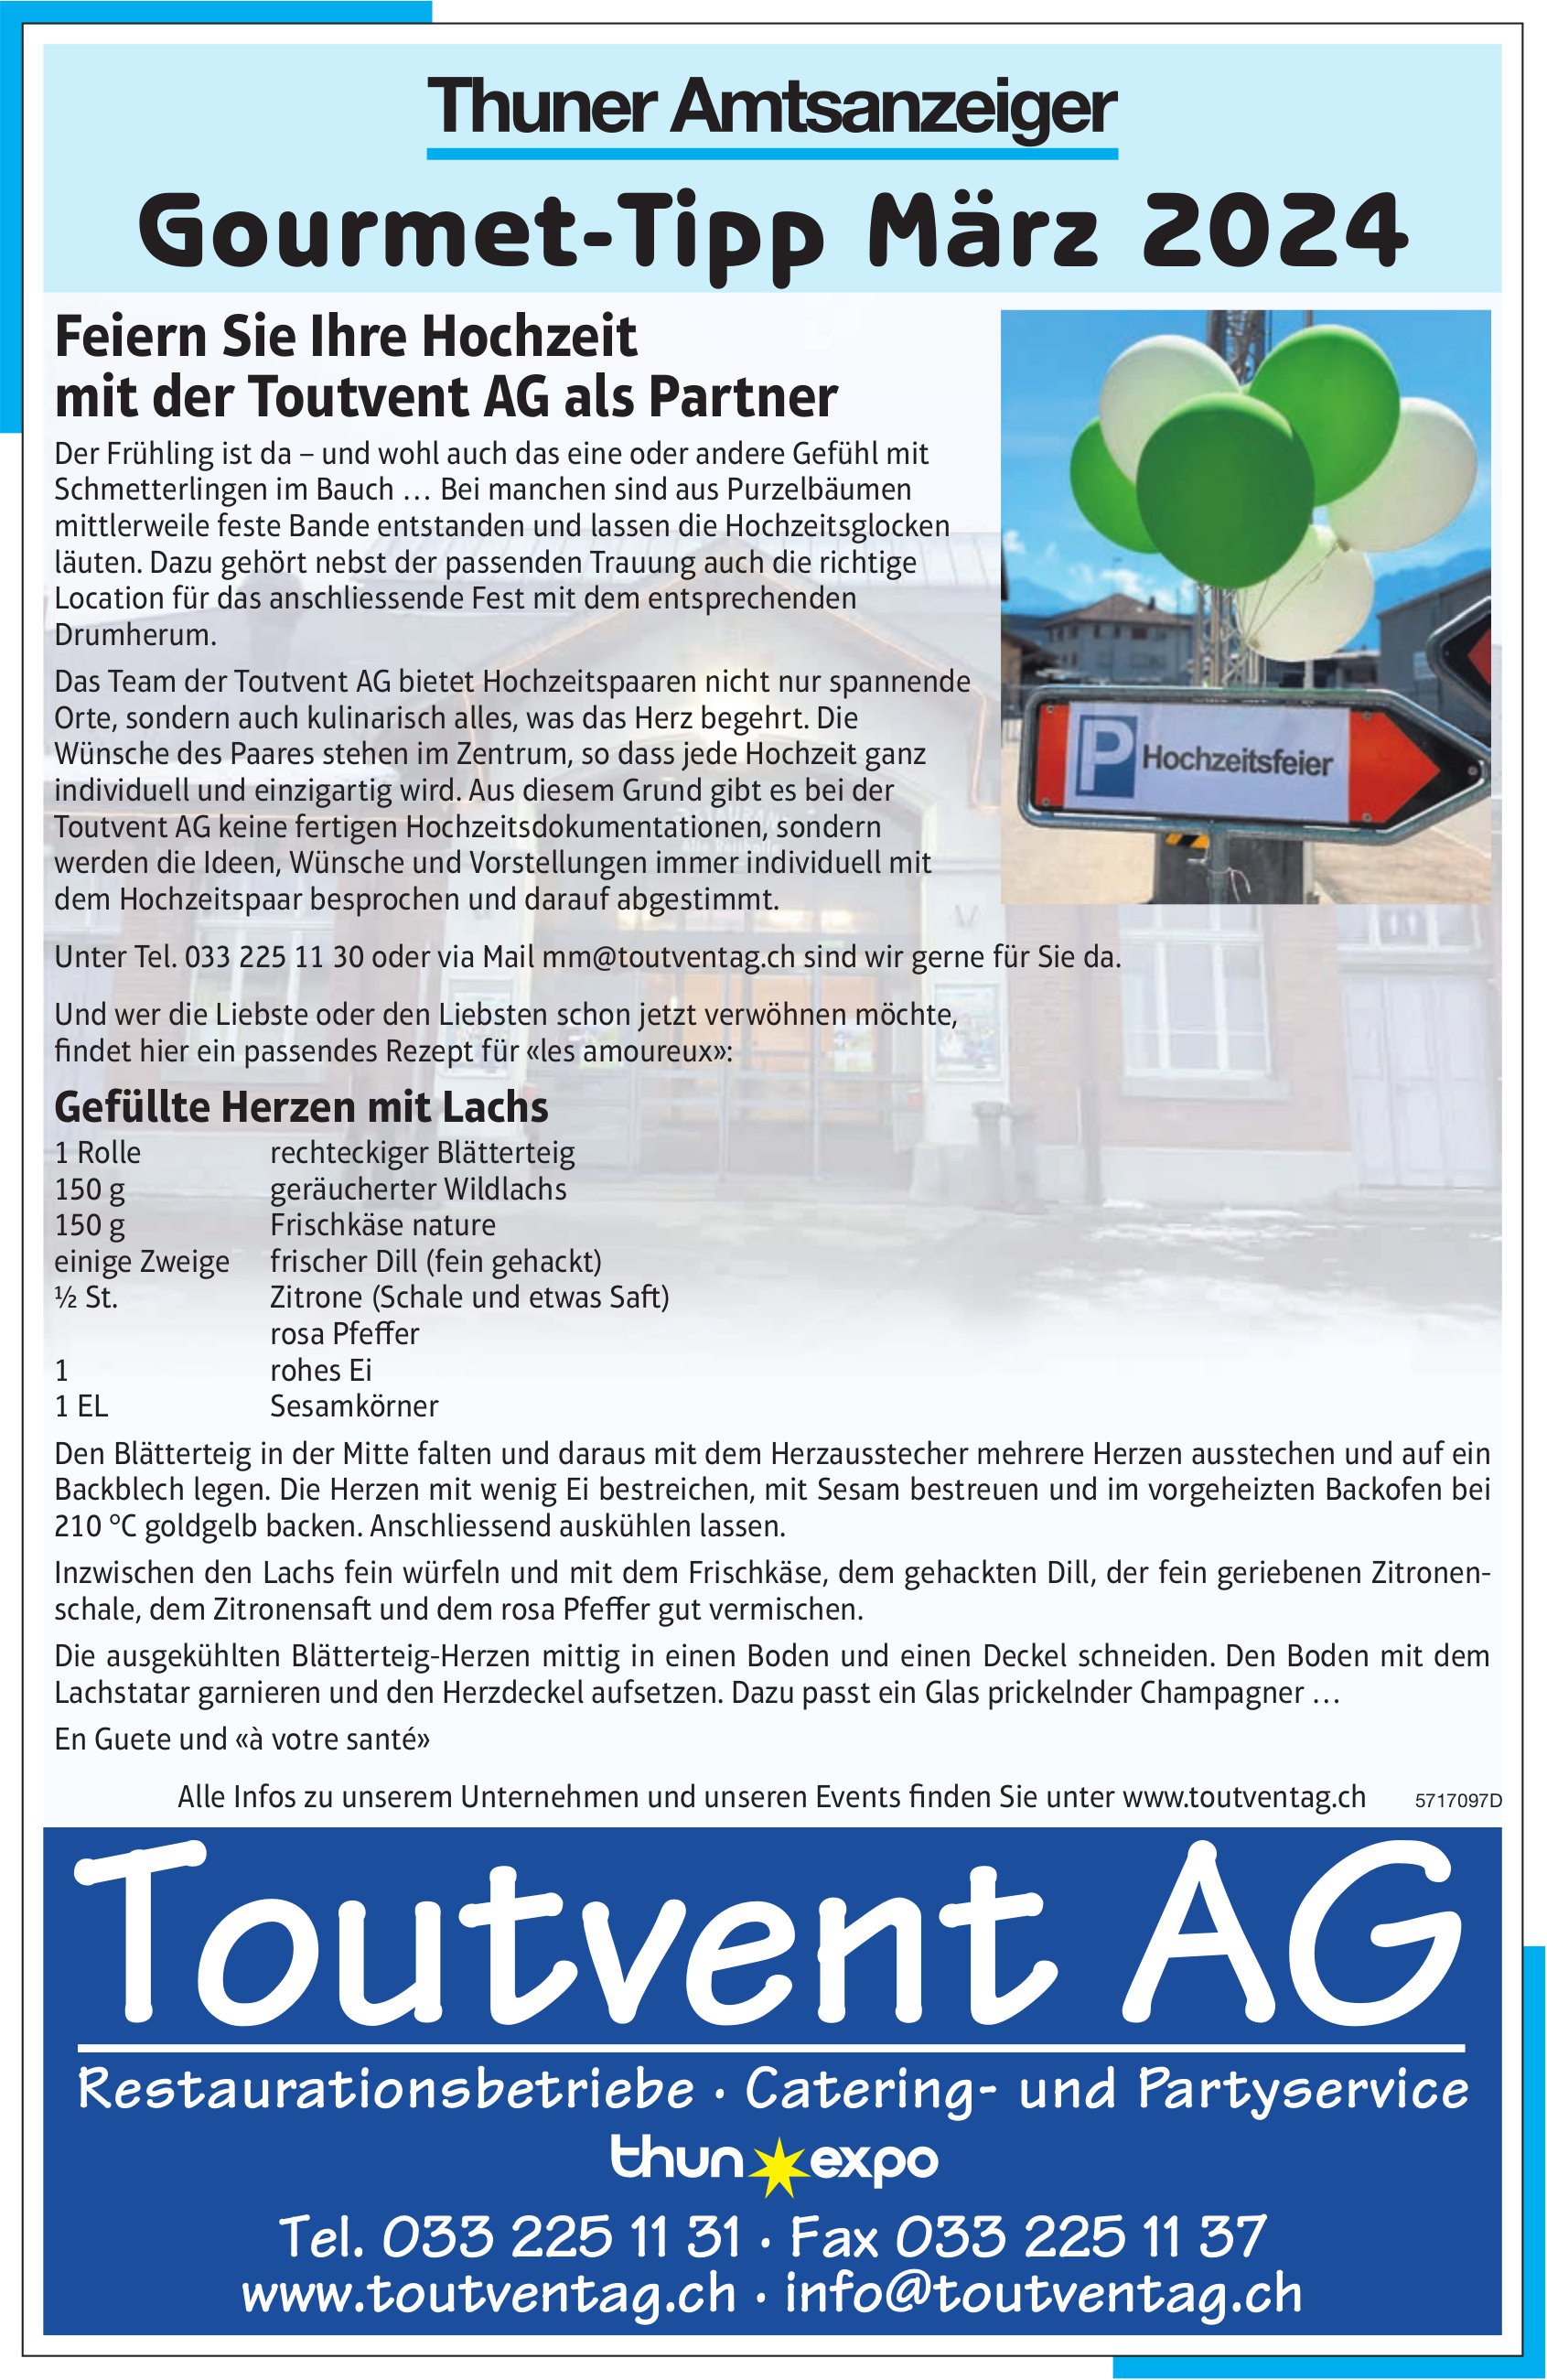 Toutvent AG, Thuner Amtsanzeiger Gourmet-Tipp März 2024